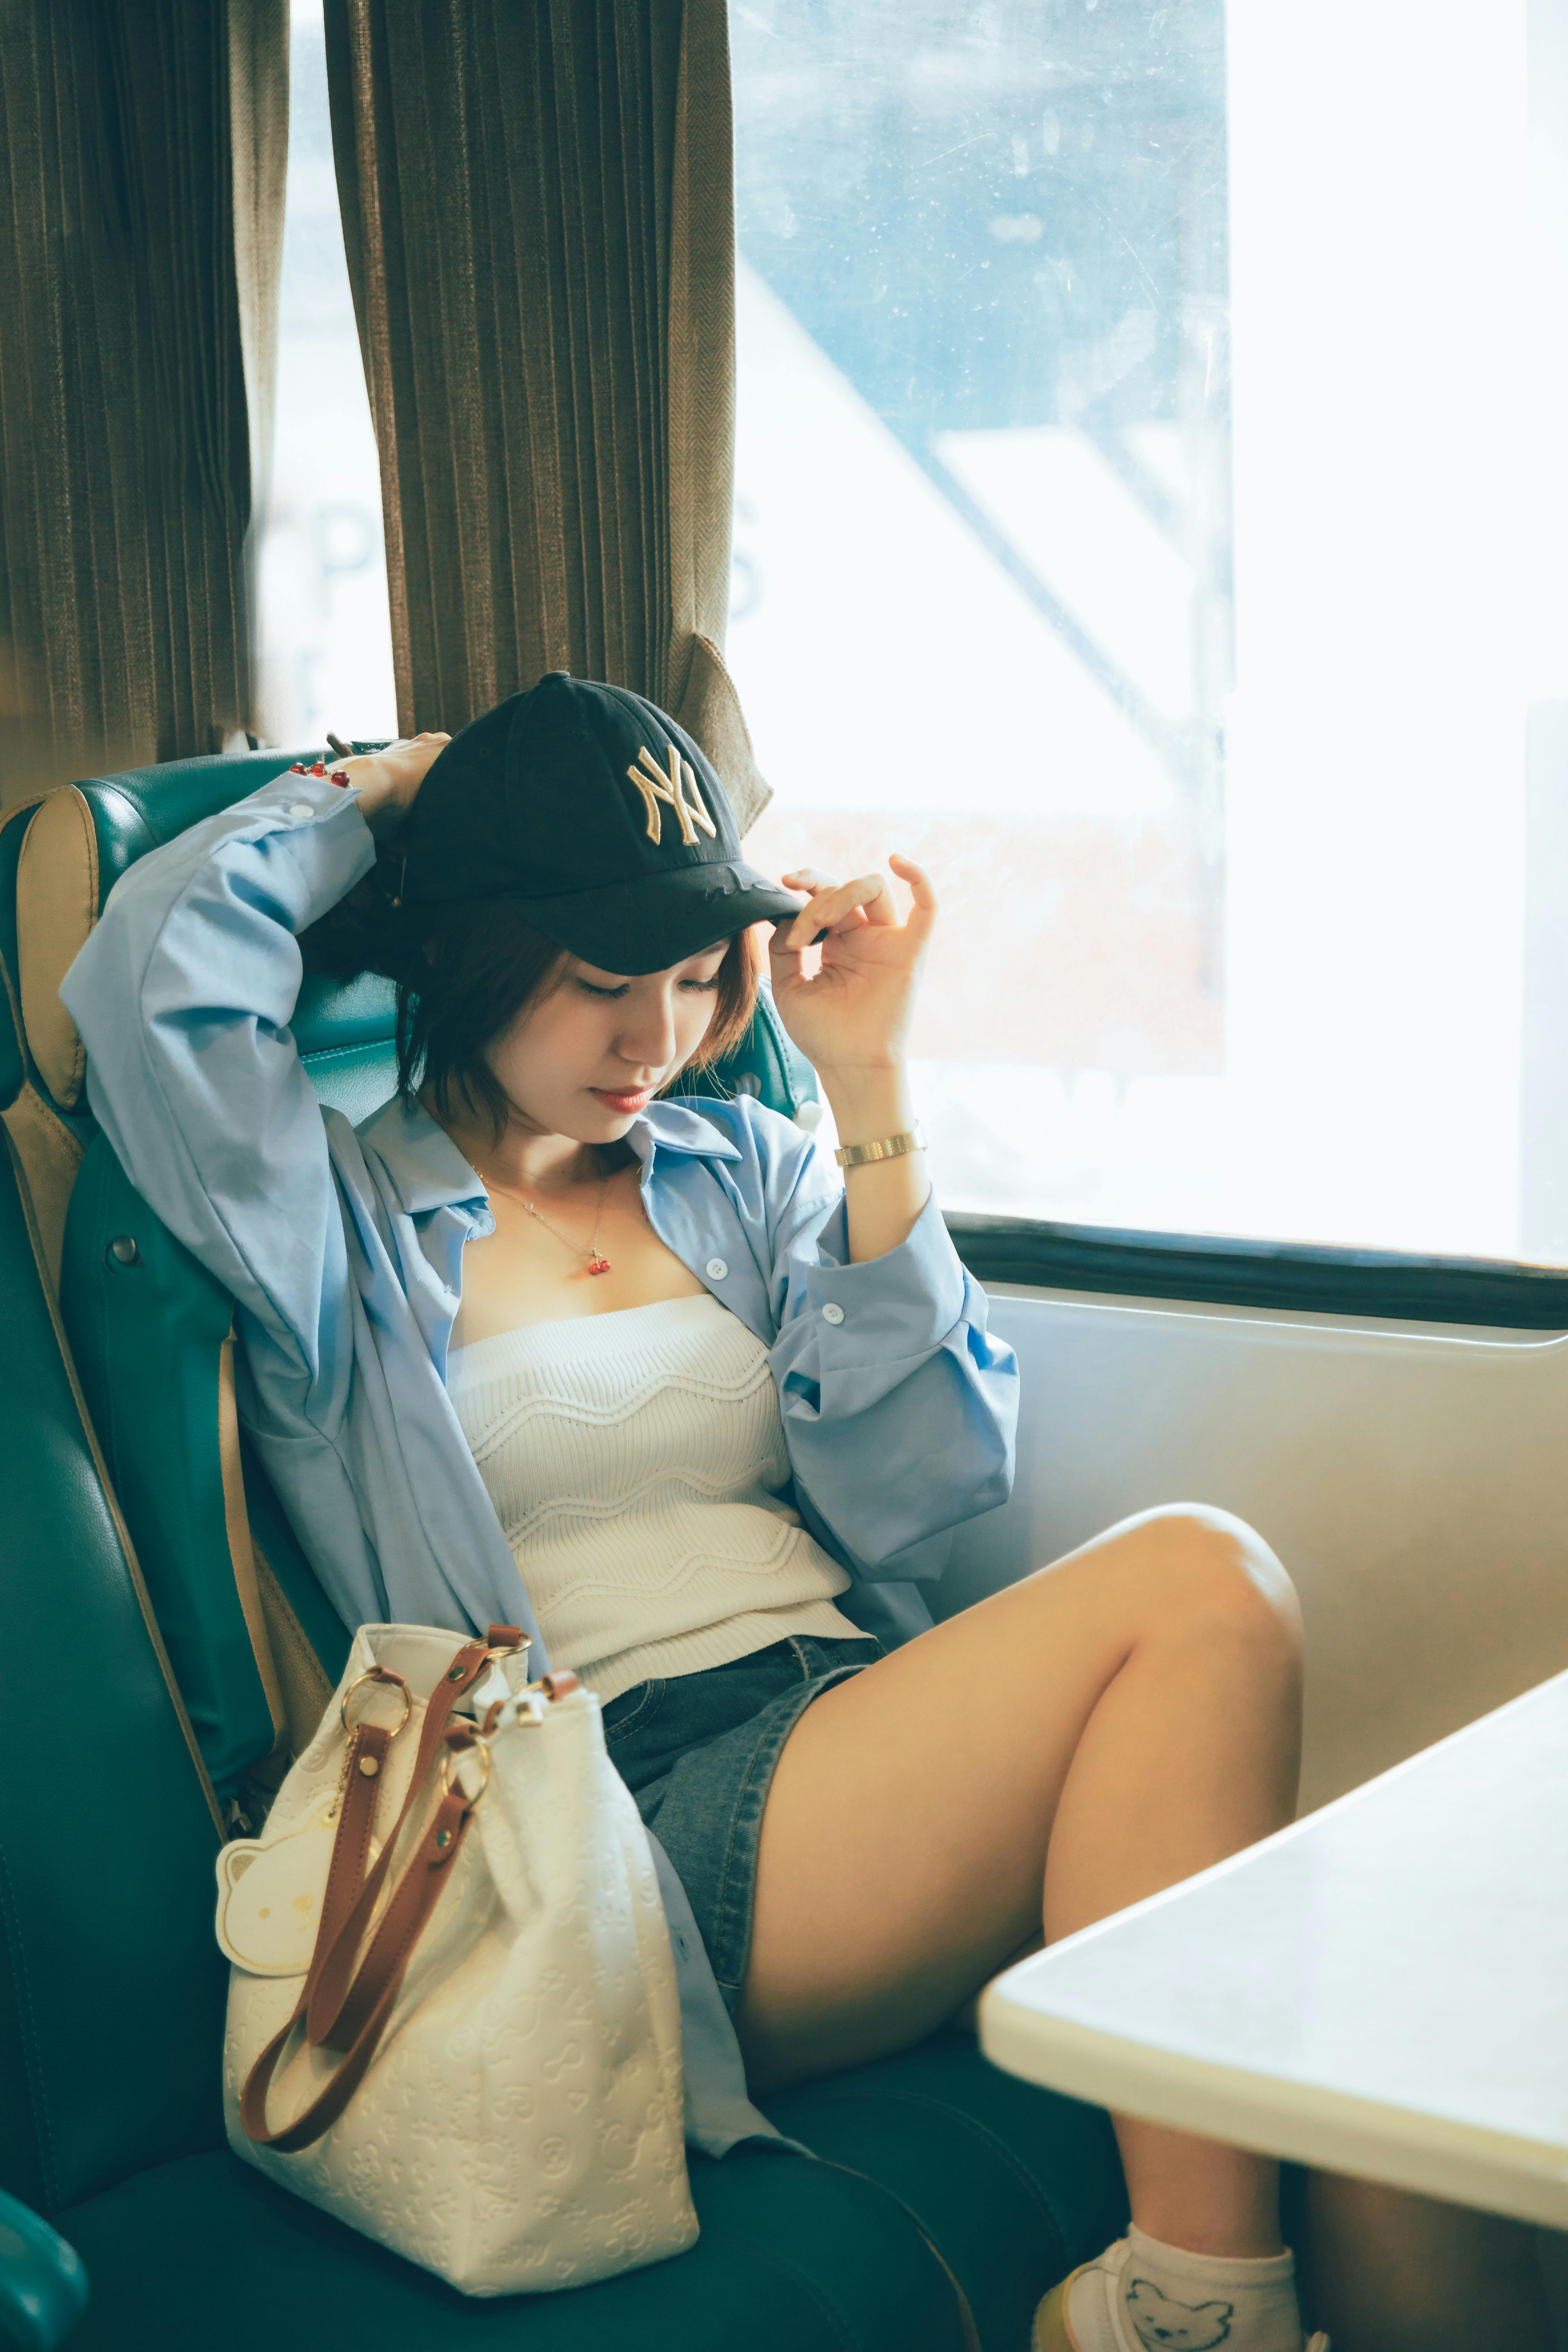 Une femme assise dans le métro | Source : Pexels